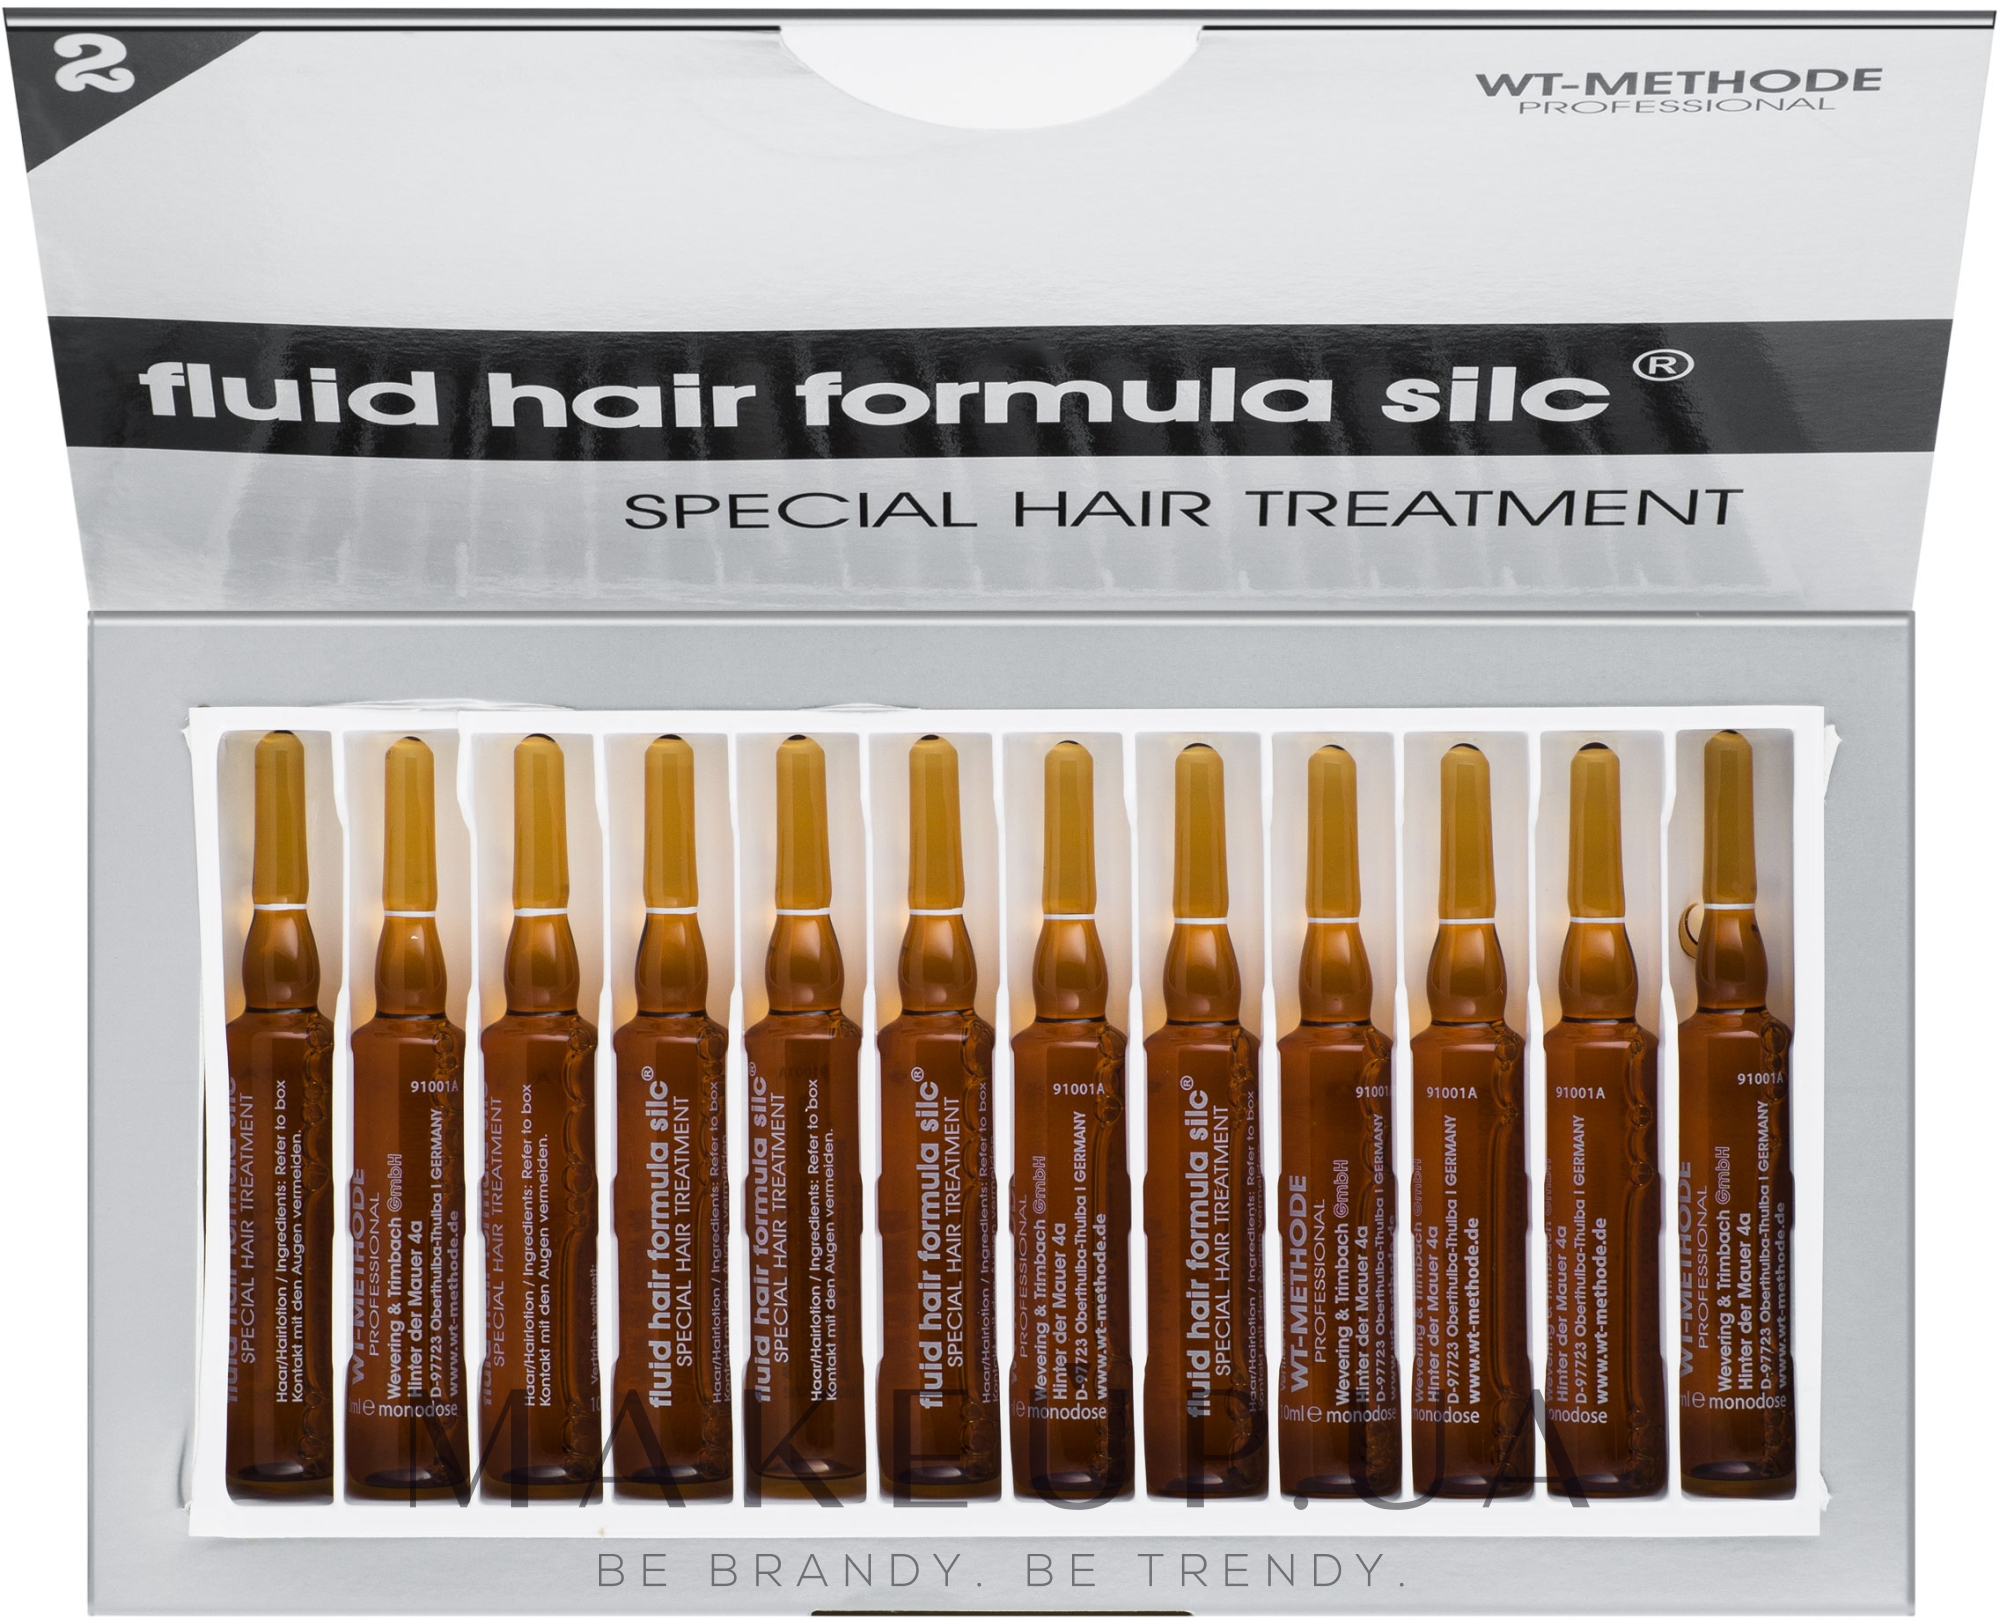 Жидкий кератин для восстановления структуры волос "Формула силк" - Placen Formula Fluid Hair Formula Silc Special Hair Treatment — фото 12x10ml